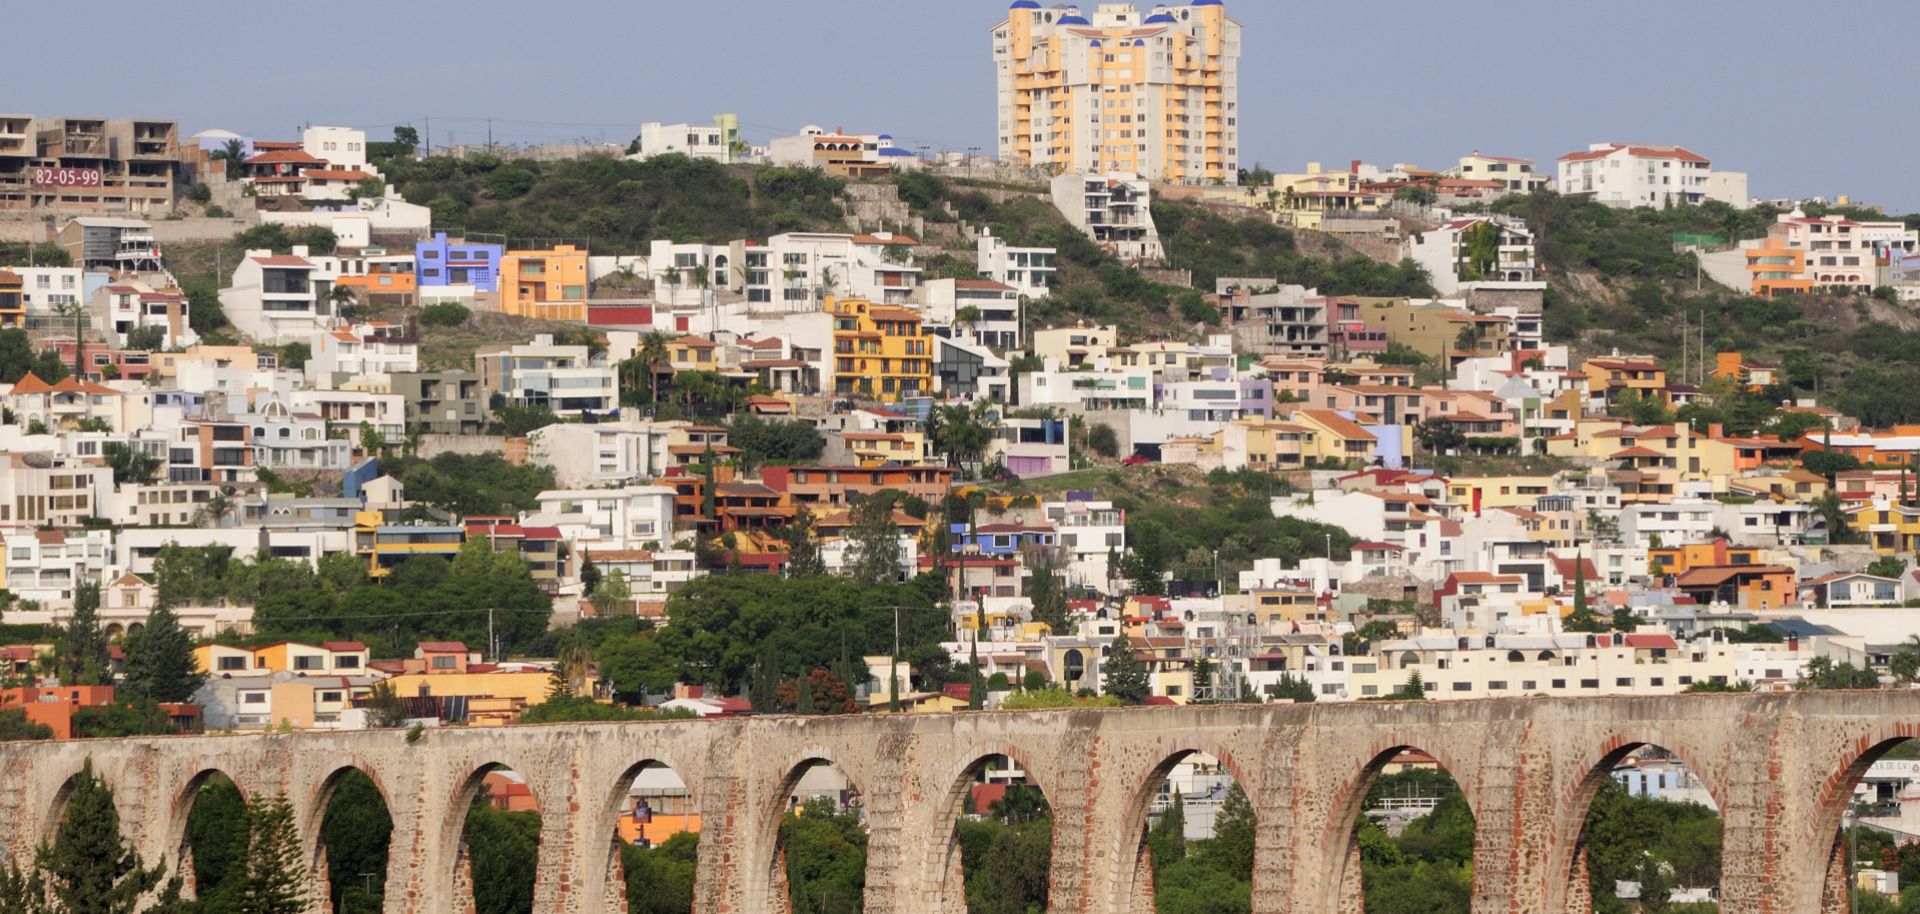 Mexico, Bajio, Queretaro, City view with aqueduct from mirador.